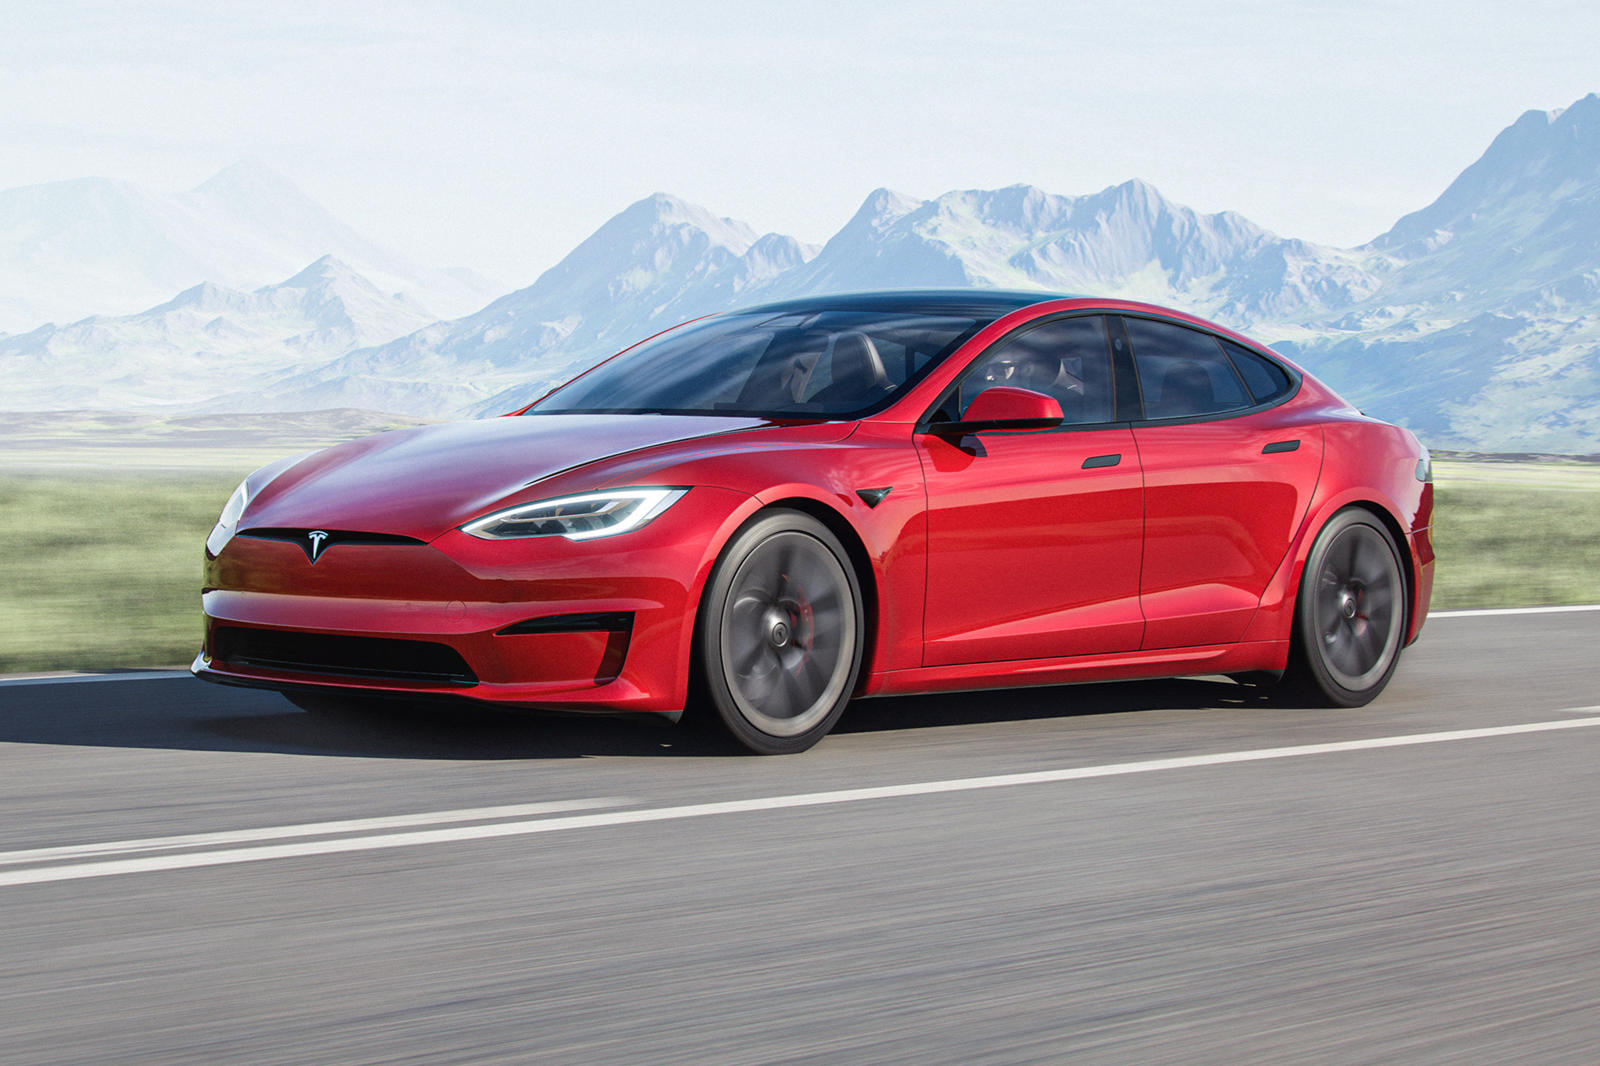 Новая модель S Plaid в настоящее время является звездой модельного ряда Tesla. Tesla утверждает, что трехмоторный электрический седан разгоняется до 100 км/ч менее чем за 2 секунды, о чем было объявлено несколько дней назад на мероприятии во Фремонте